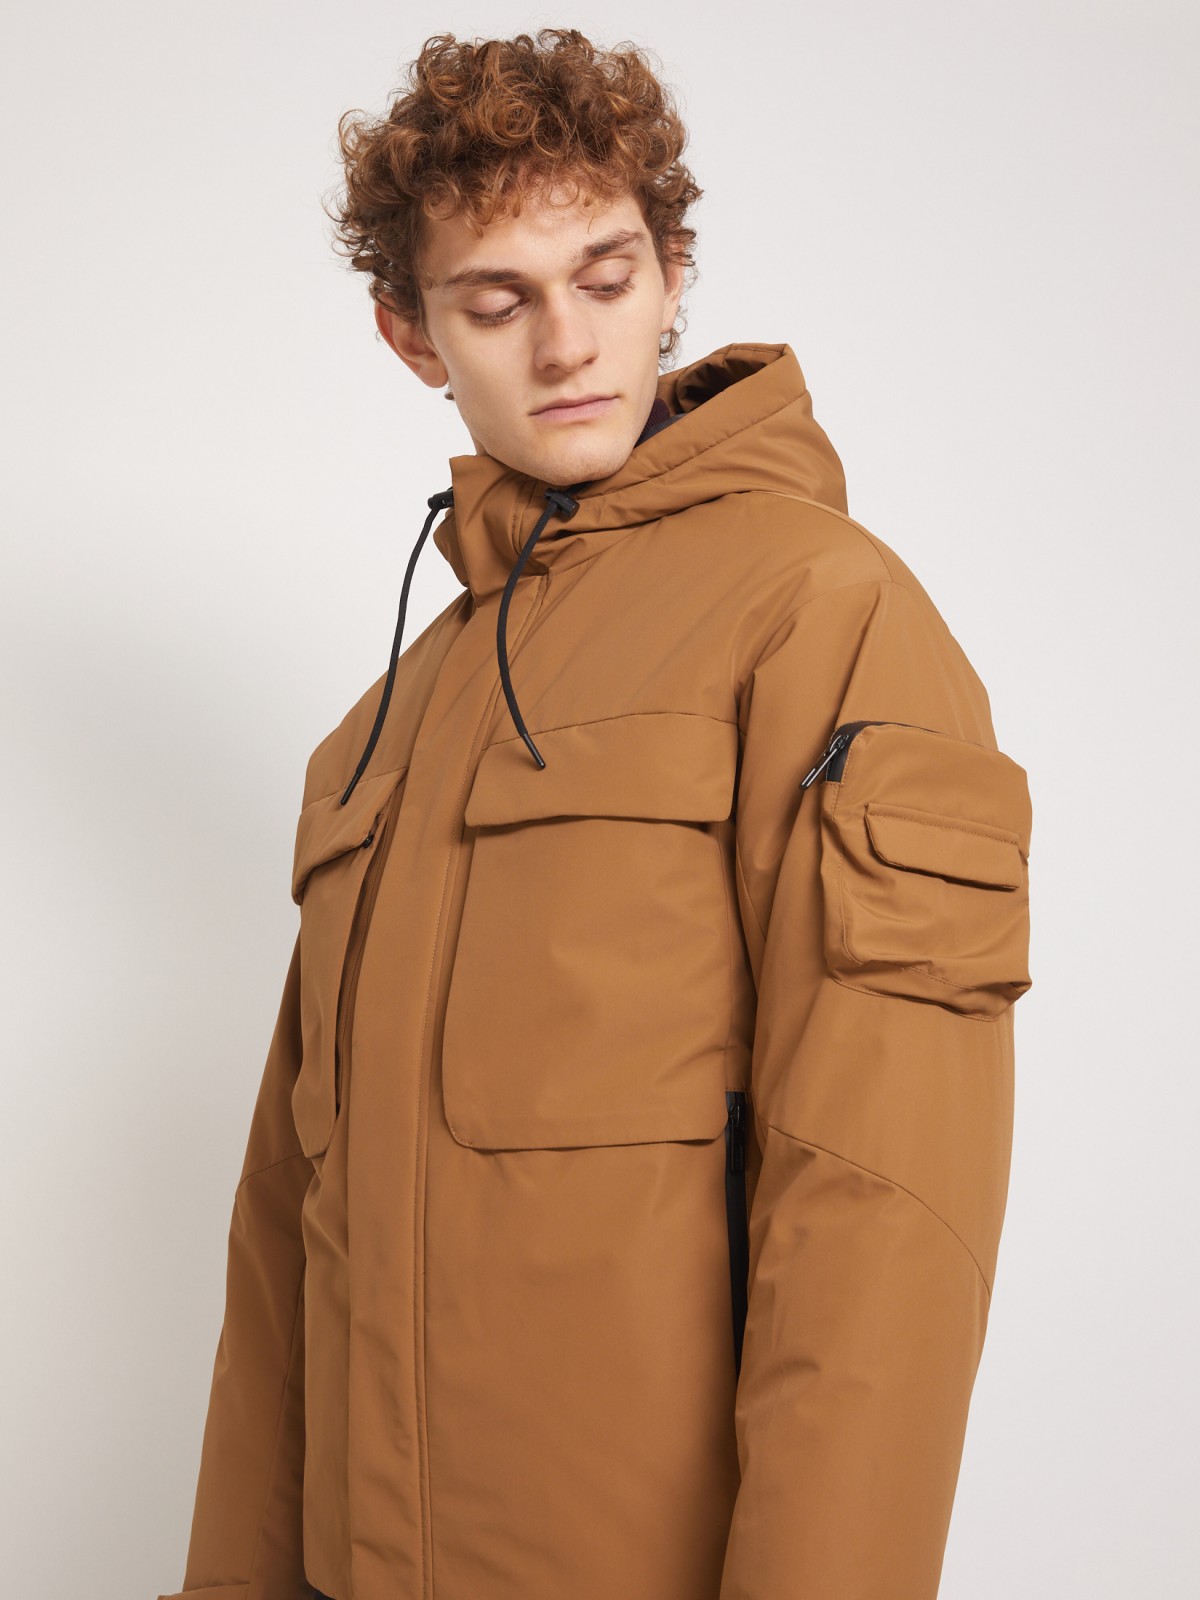 Утеплённая куртка с накладными карманами и капюшоном zolla 011335102244, цвет горчичный, размер S - фото 3